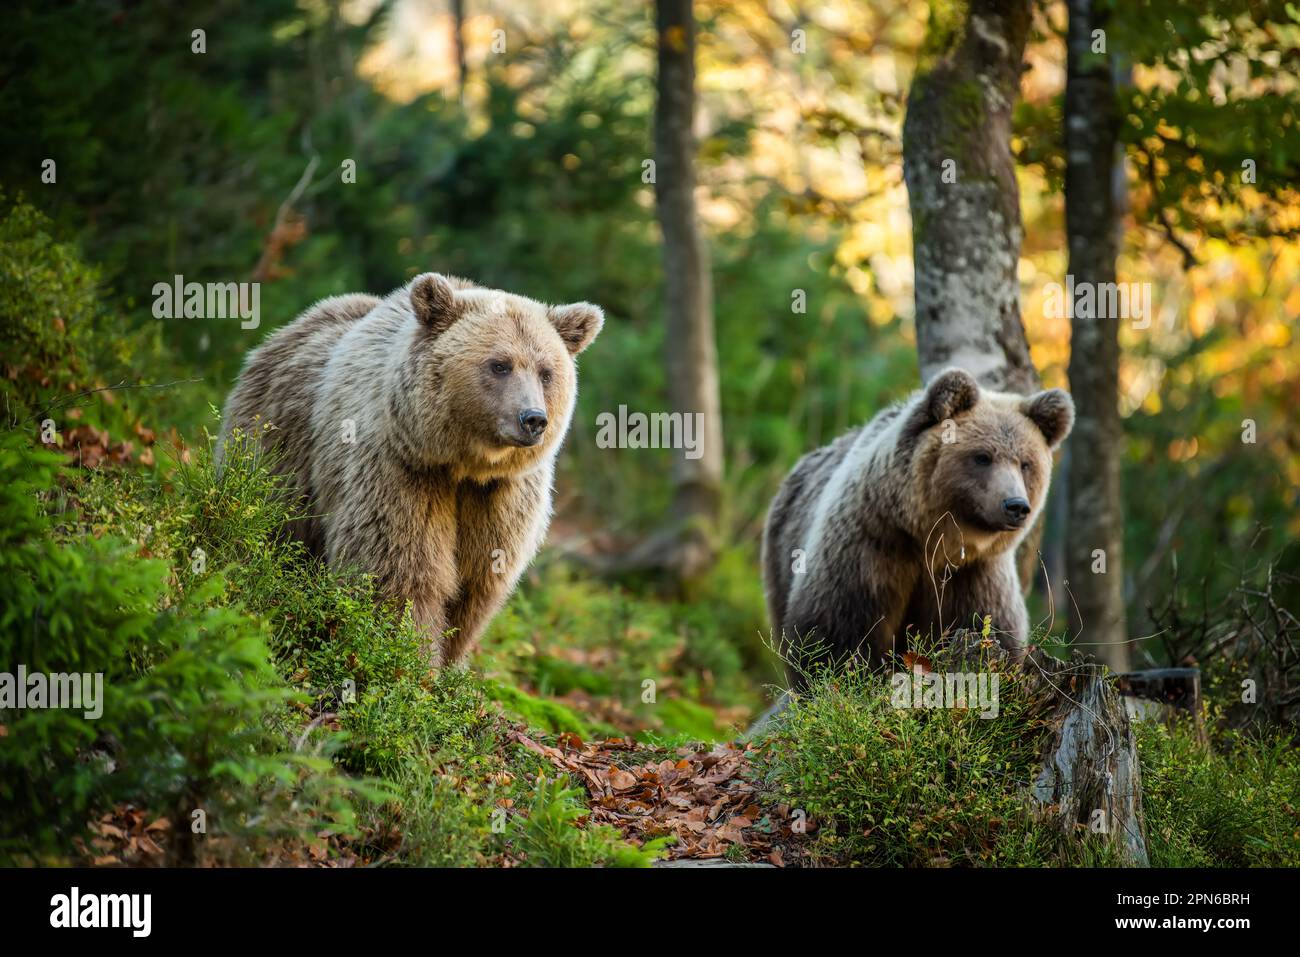 Orso bruno selvaggio (Ursus arctos) nella foresta estiva. Animale in habitat naturale. Scena della fauna selvatica Foto Stock